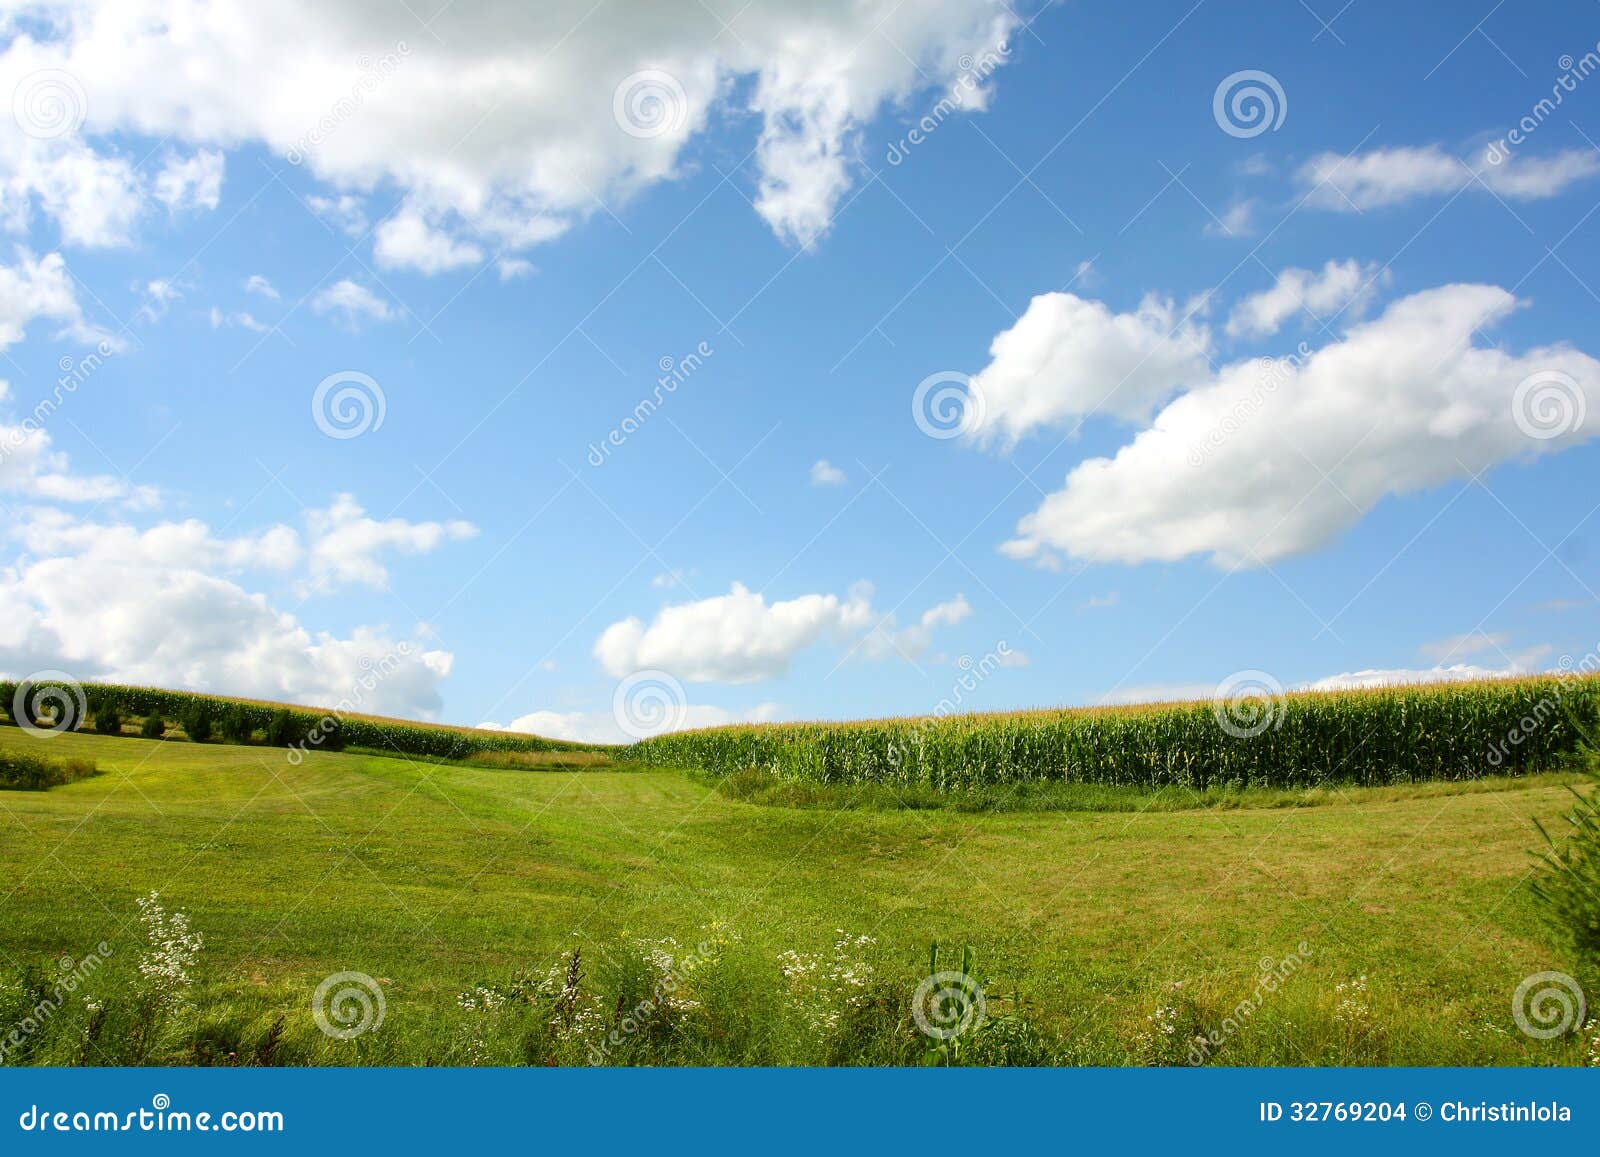 玉米田风景. 玉米田在美丽的蓝色夏天天空前面的象草的小山延长，与在前景的野花。